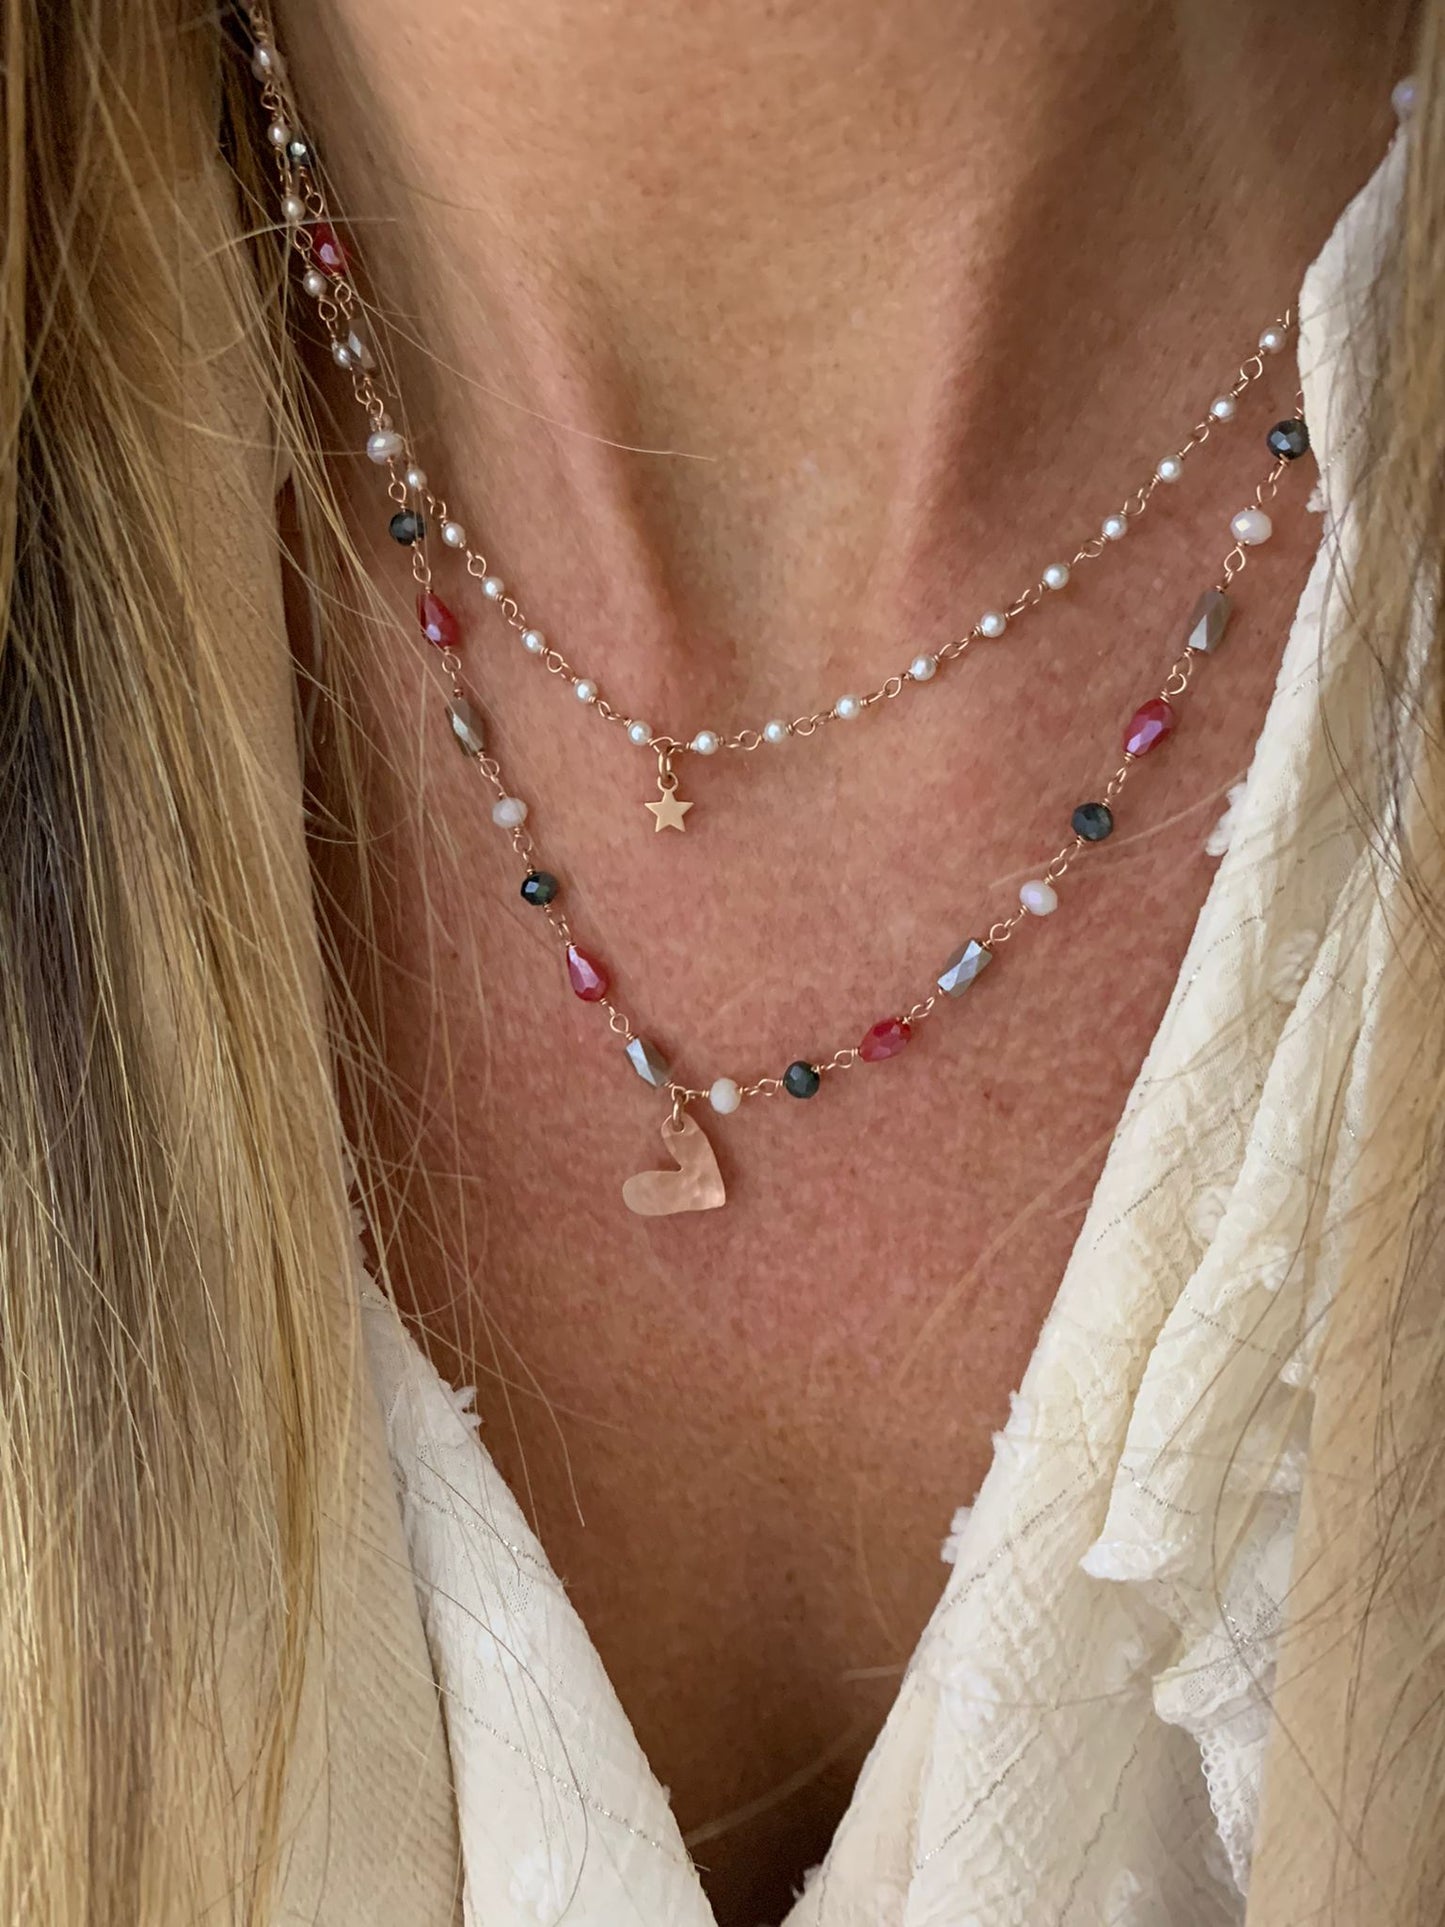 Collana a due fili con micro perle e cristalli bordeaux,argento,nero e –  Lumiere Bijoux